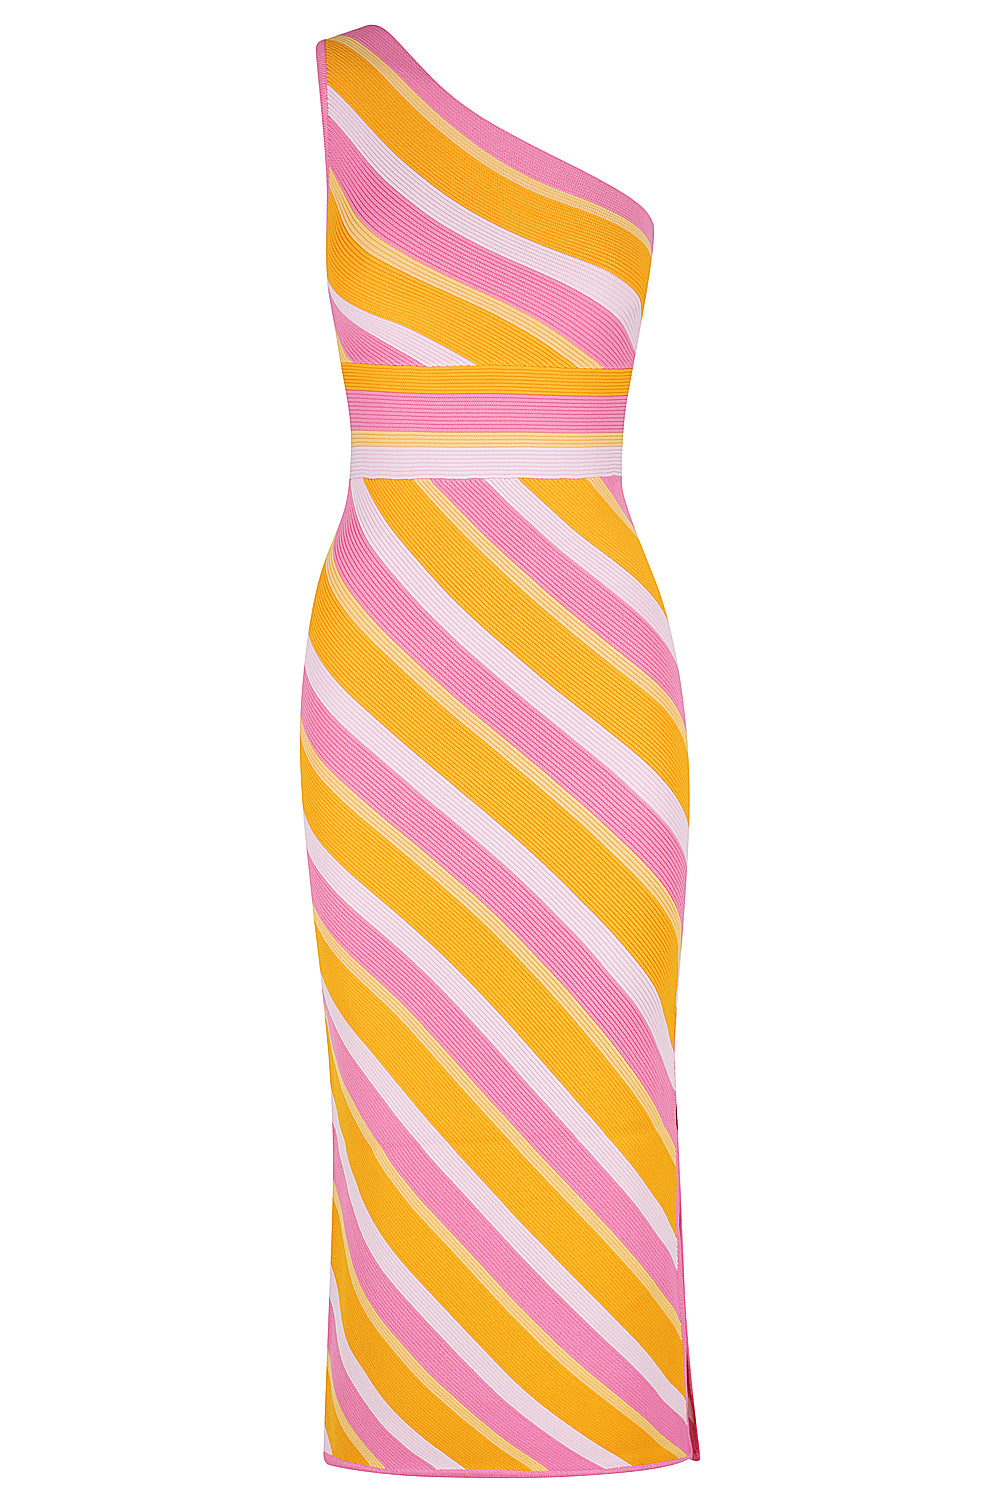 St Tropez One Shoulder Knit Dress - Tropicana Stripe